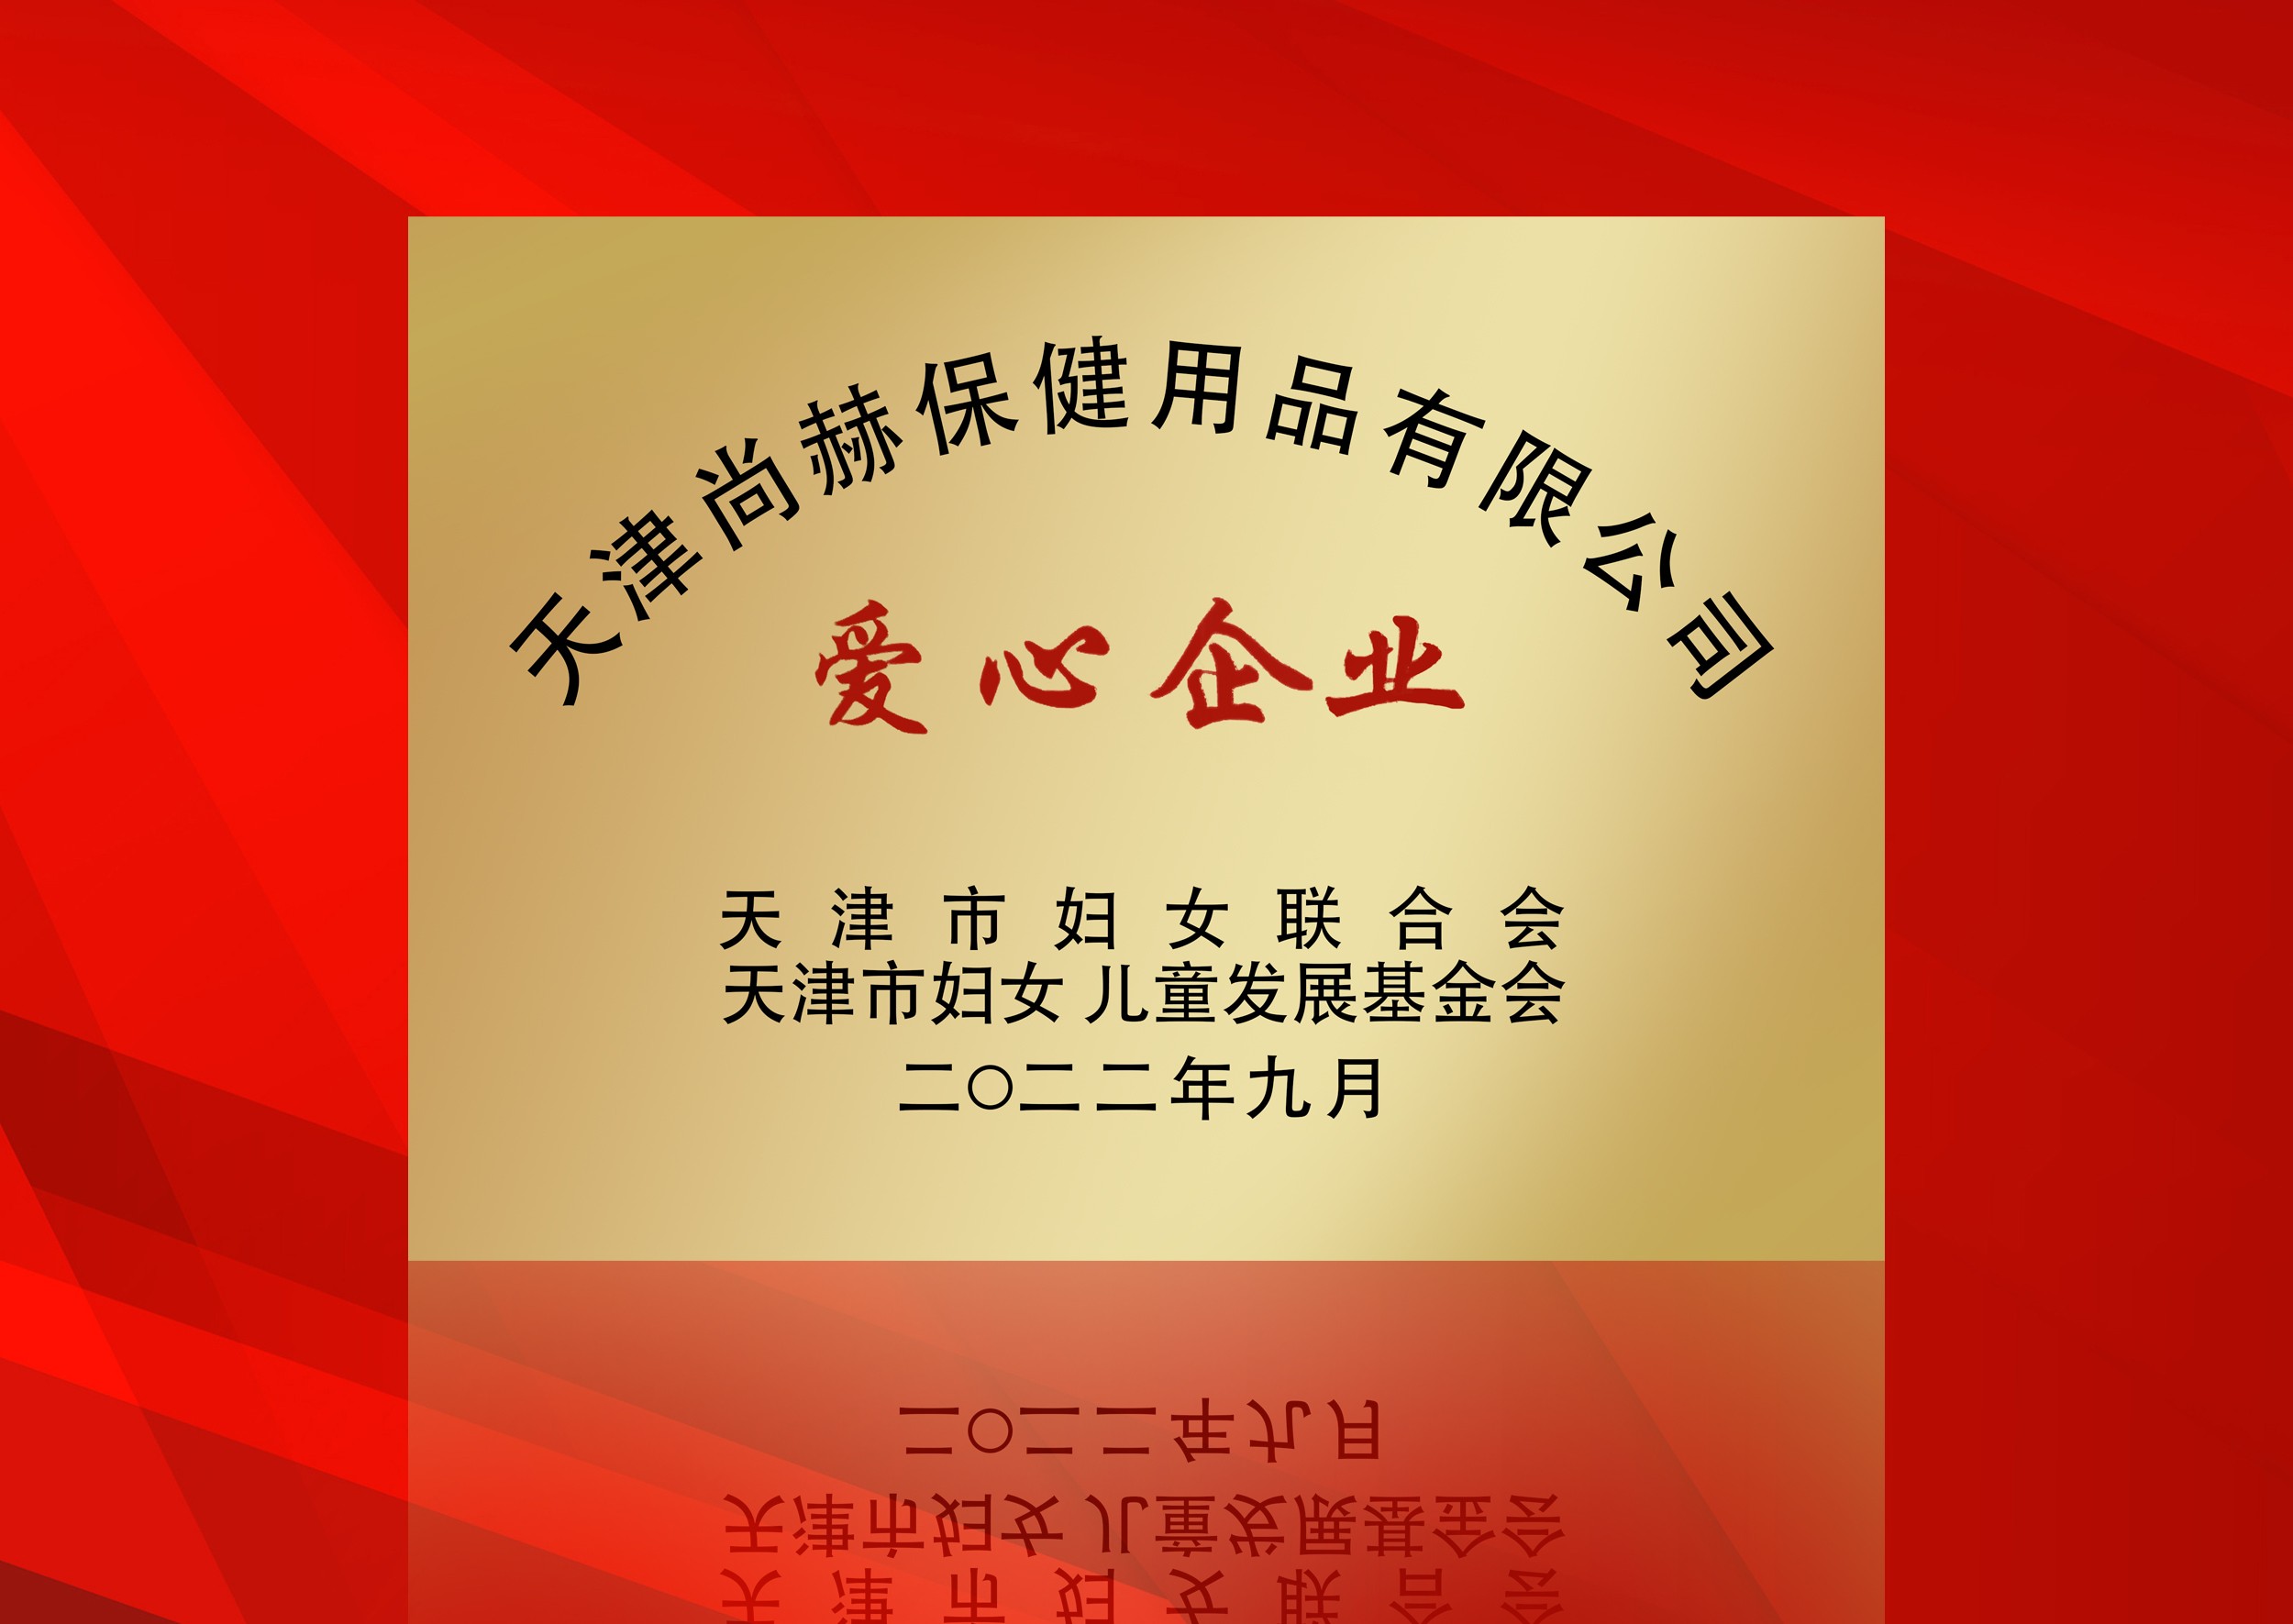 2022年9月-尊龙体育国际(中国)科技有限公司荣获-天津市妇女联合会-“爱心企业”称号